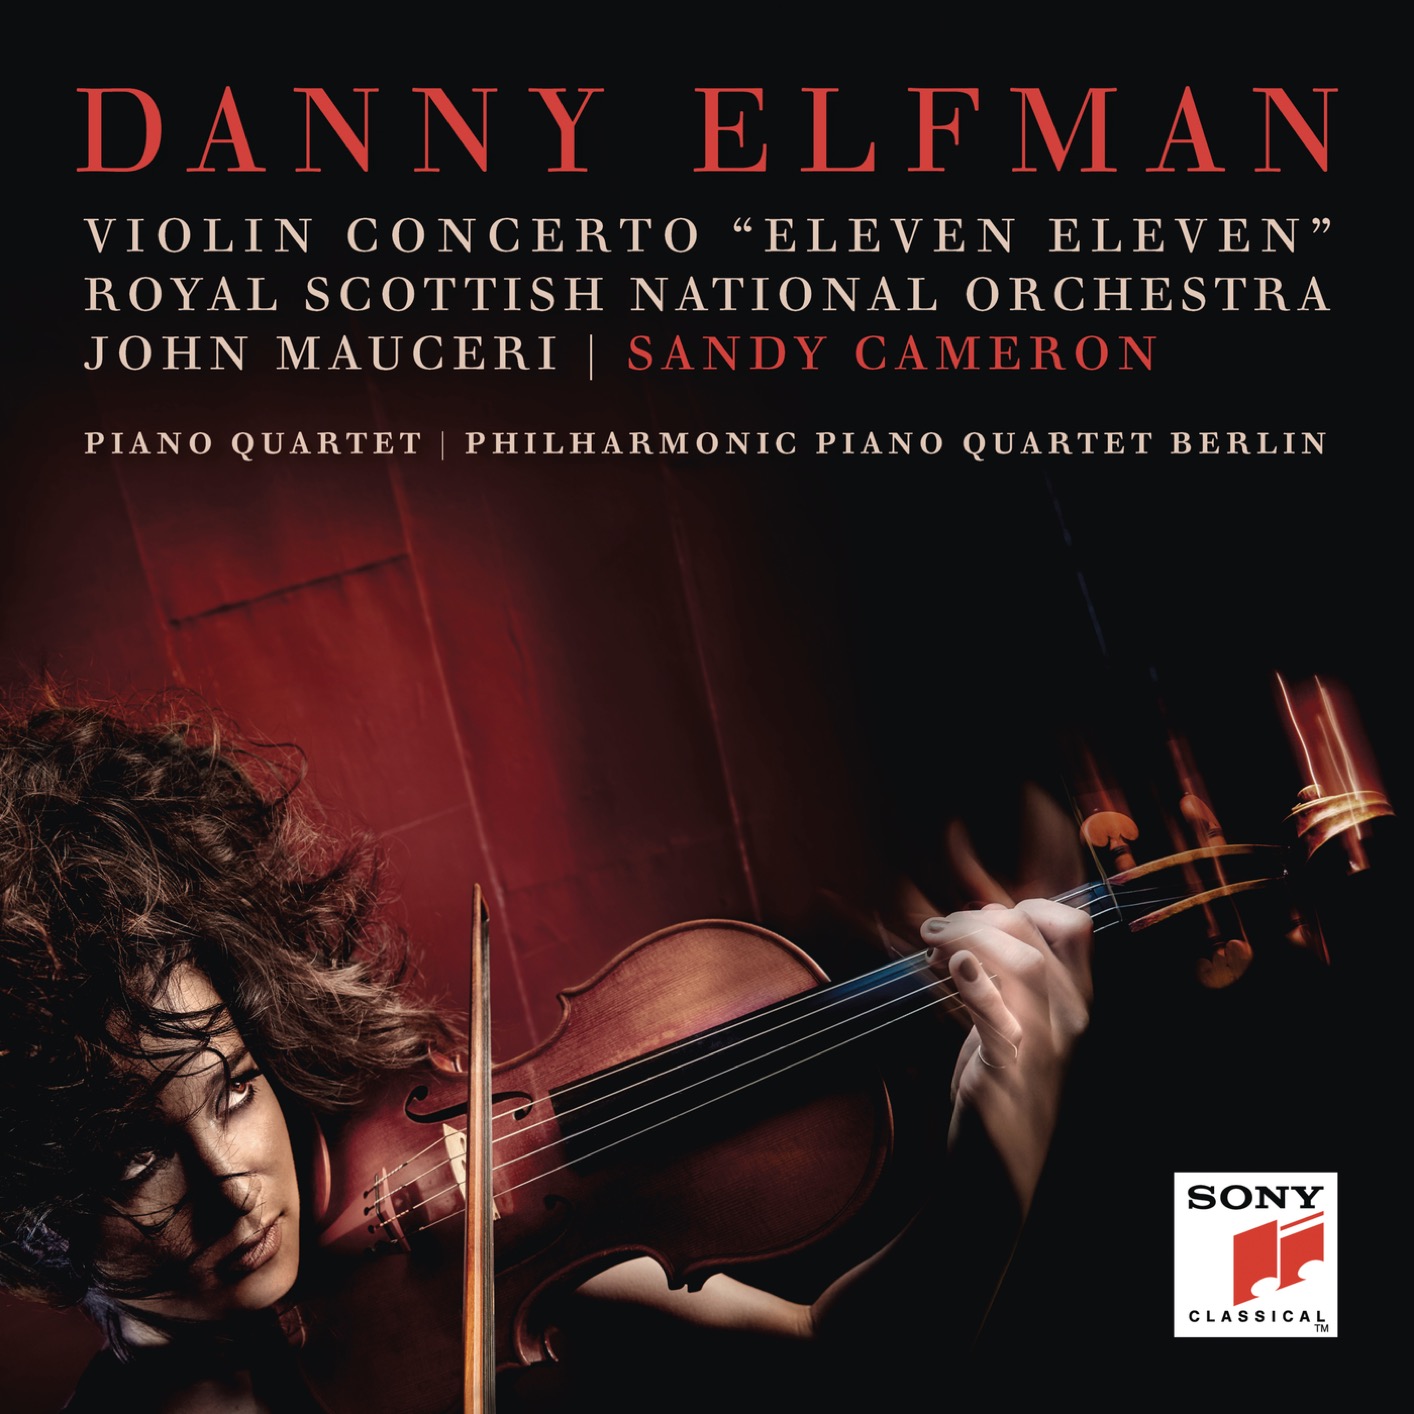 Danny Elfman – Violin Concerto “Eleven Eleven” and Piano Quartet (2019) [FLAC 24bit/48kHz]